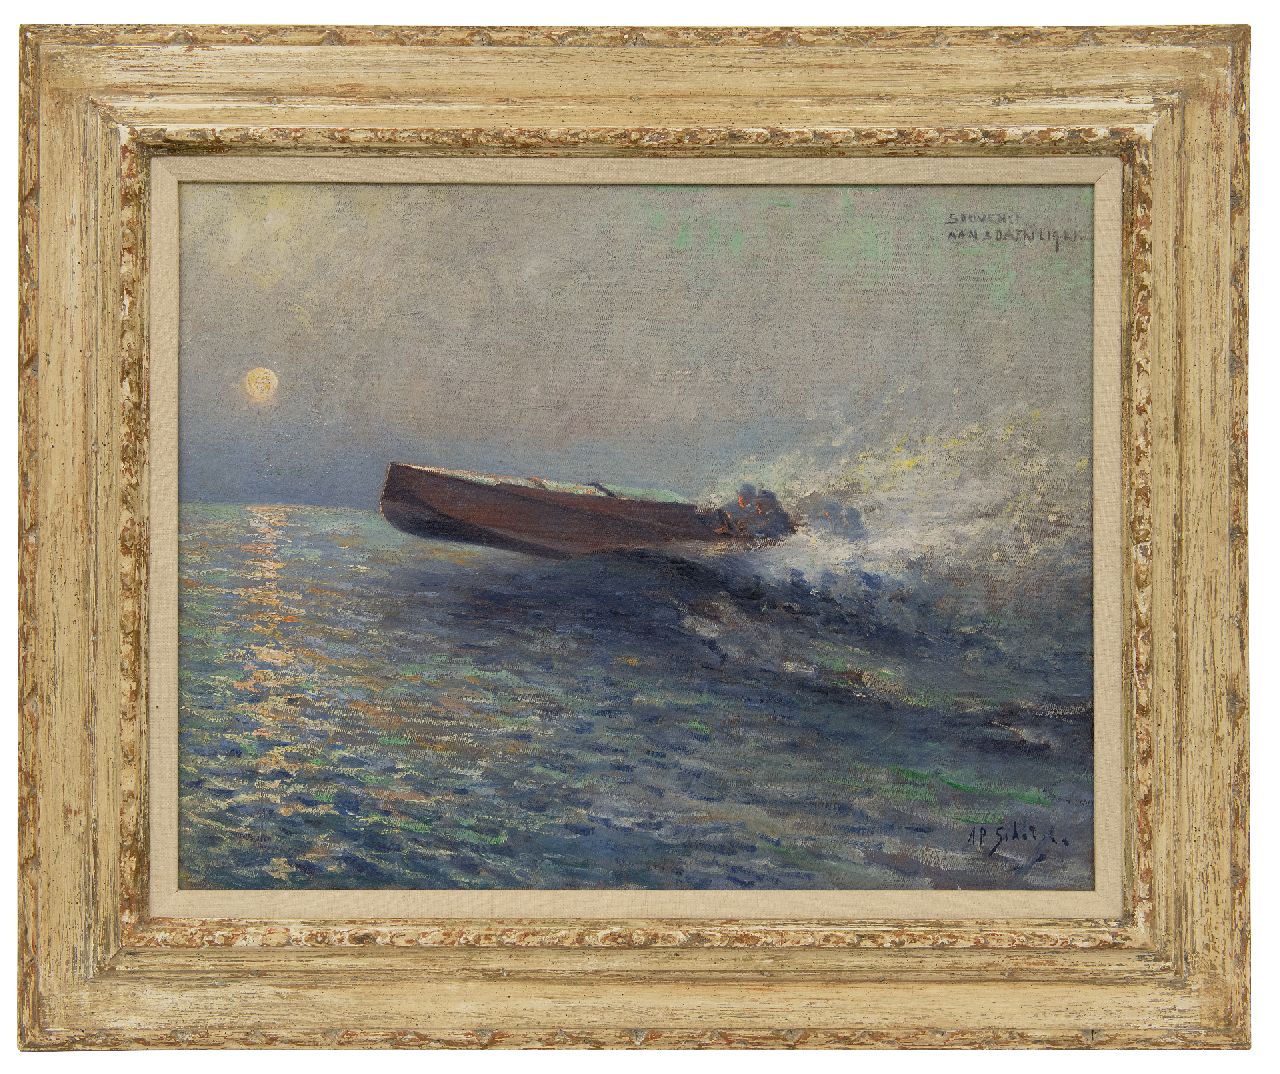 Schotel A.P.  | Anthonie Pieter Schotel | Schilderijen te koop aangeboden | Speed-boat race bij zonsondergang, olieverf op doek 43,6 x 57,3 cm, gesigneerd rechtsonder